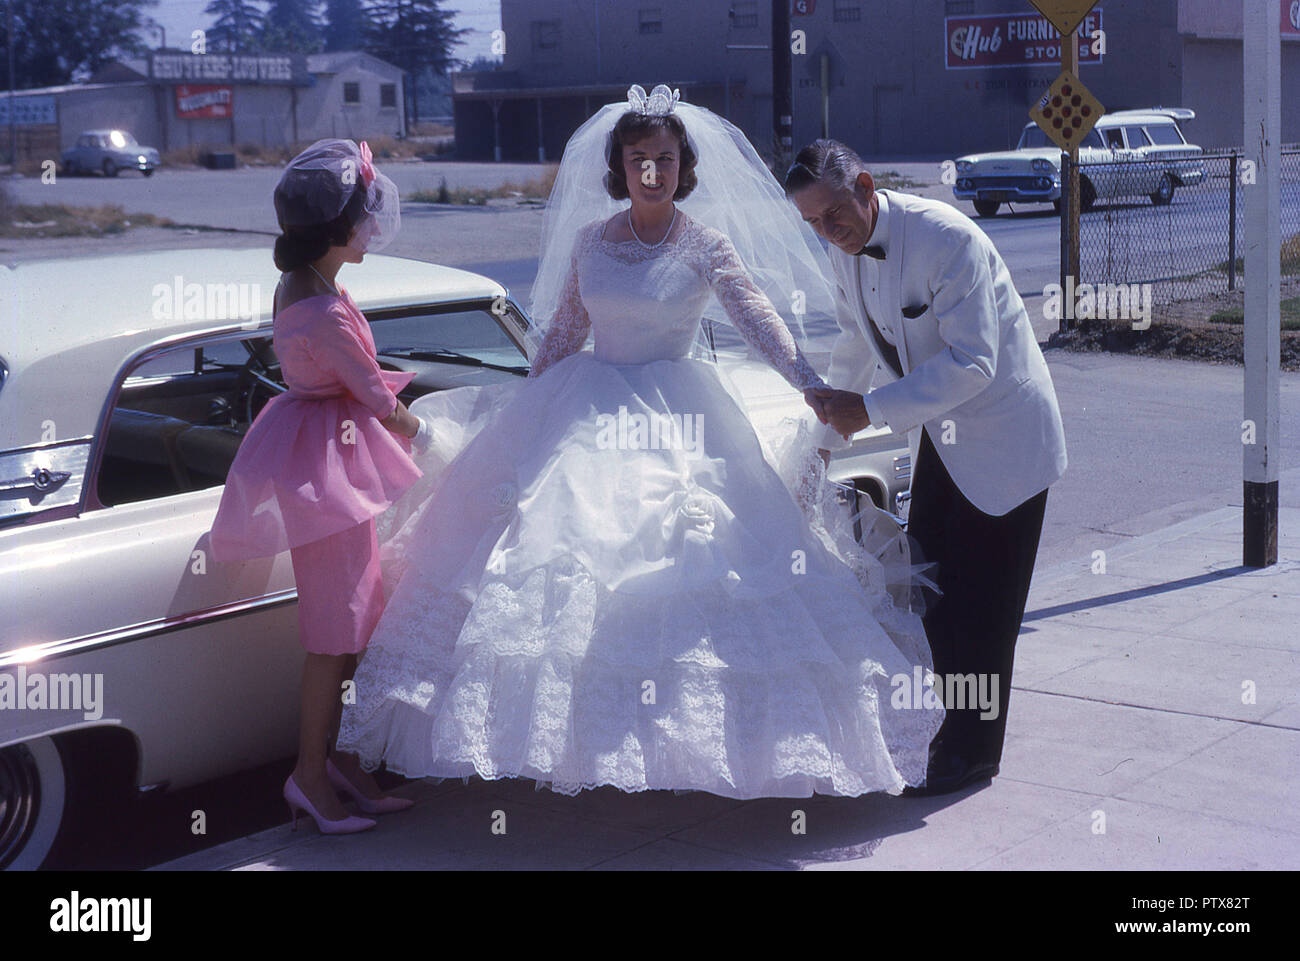 1962, historische, Kalifornien, USA, Sonnenschein, Hochzeit, junge Braut  strahlend in ihrem weißen Kleid kommt für Ihren großen Tag mit ihrer  Brautjungfer in Rosa und Vater in eine weisse Jacke ihr Begleiter  Stockfotografie -